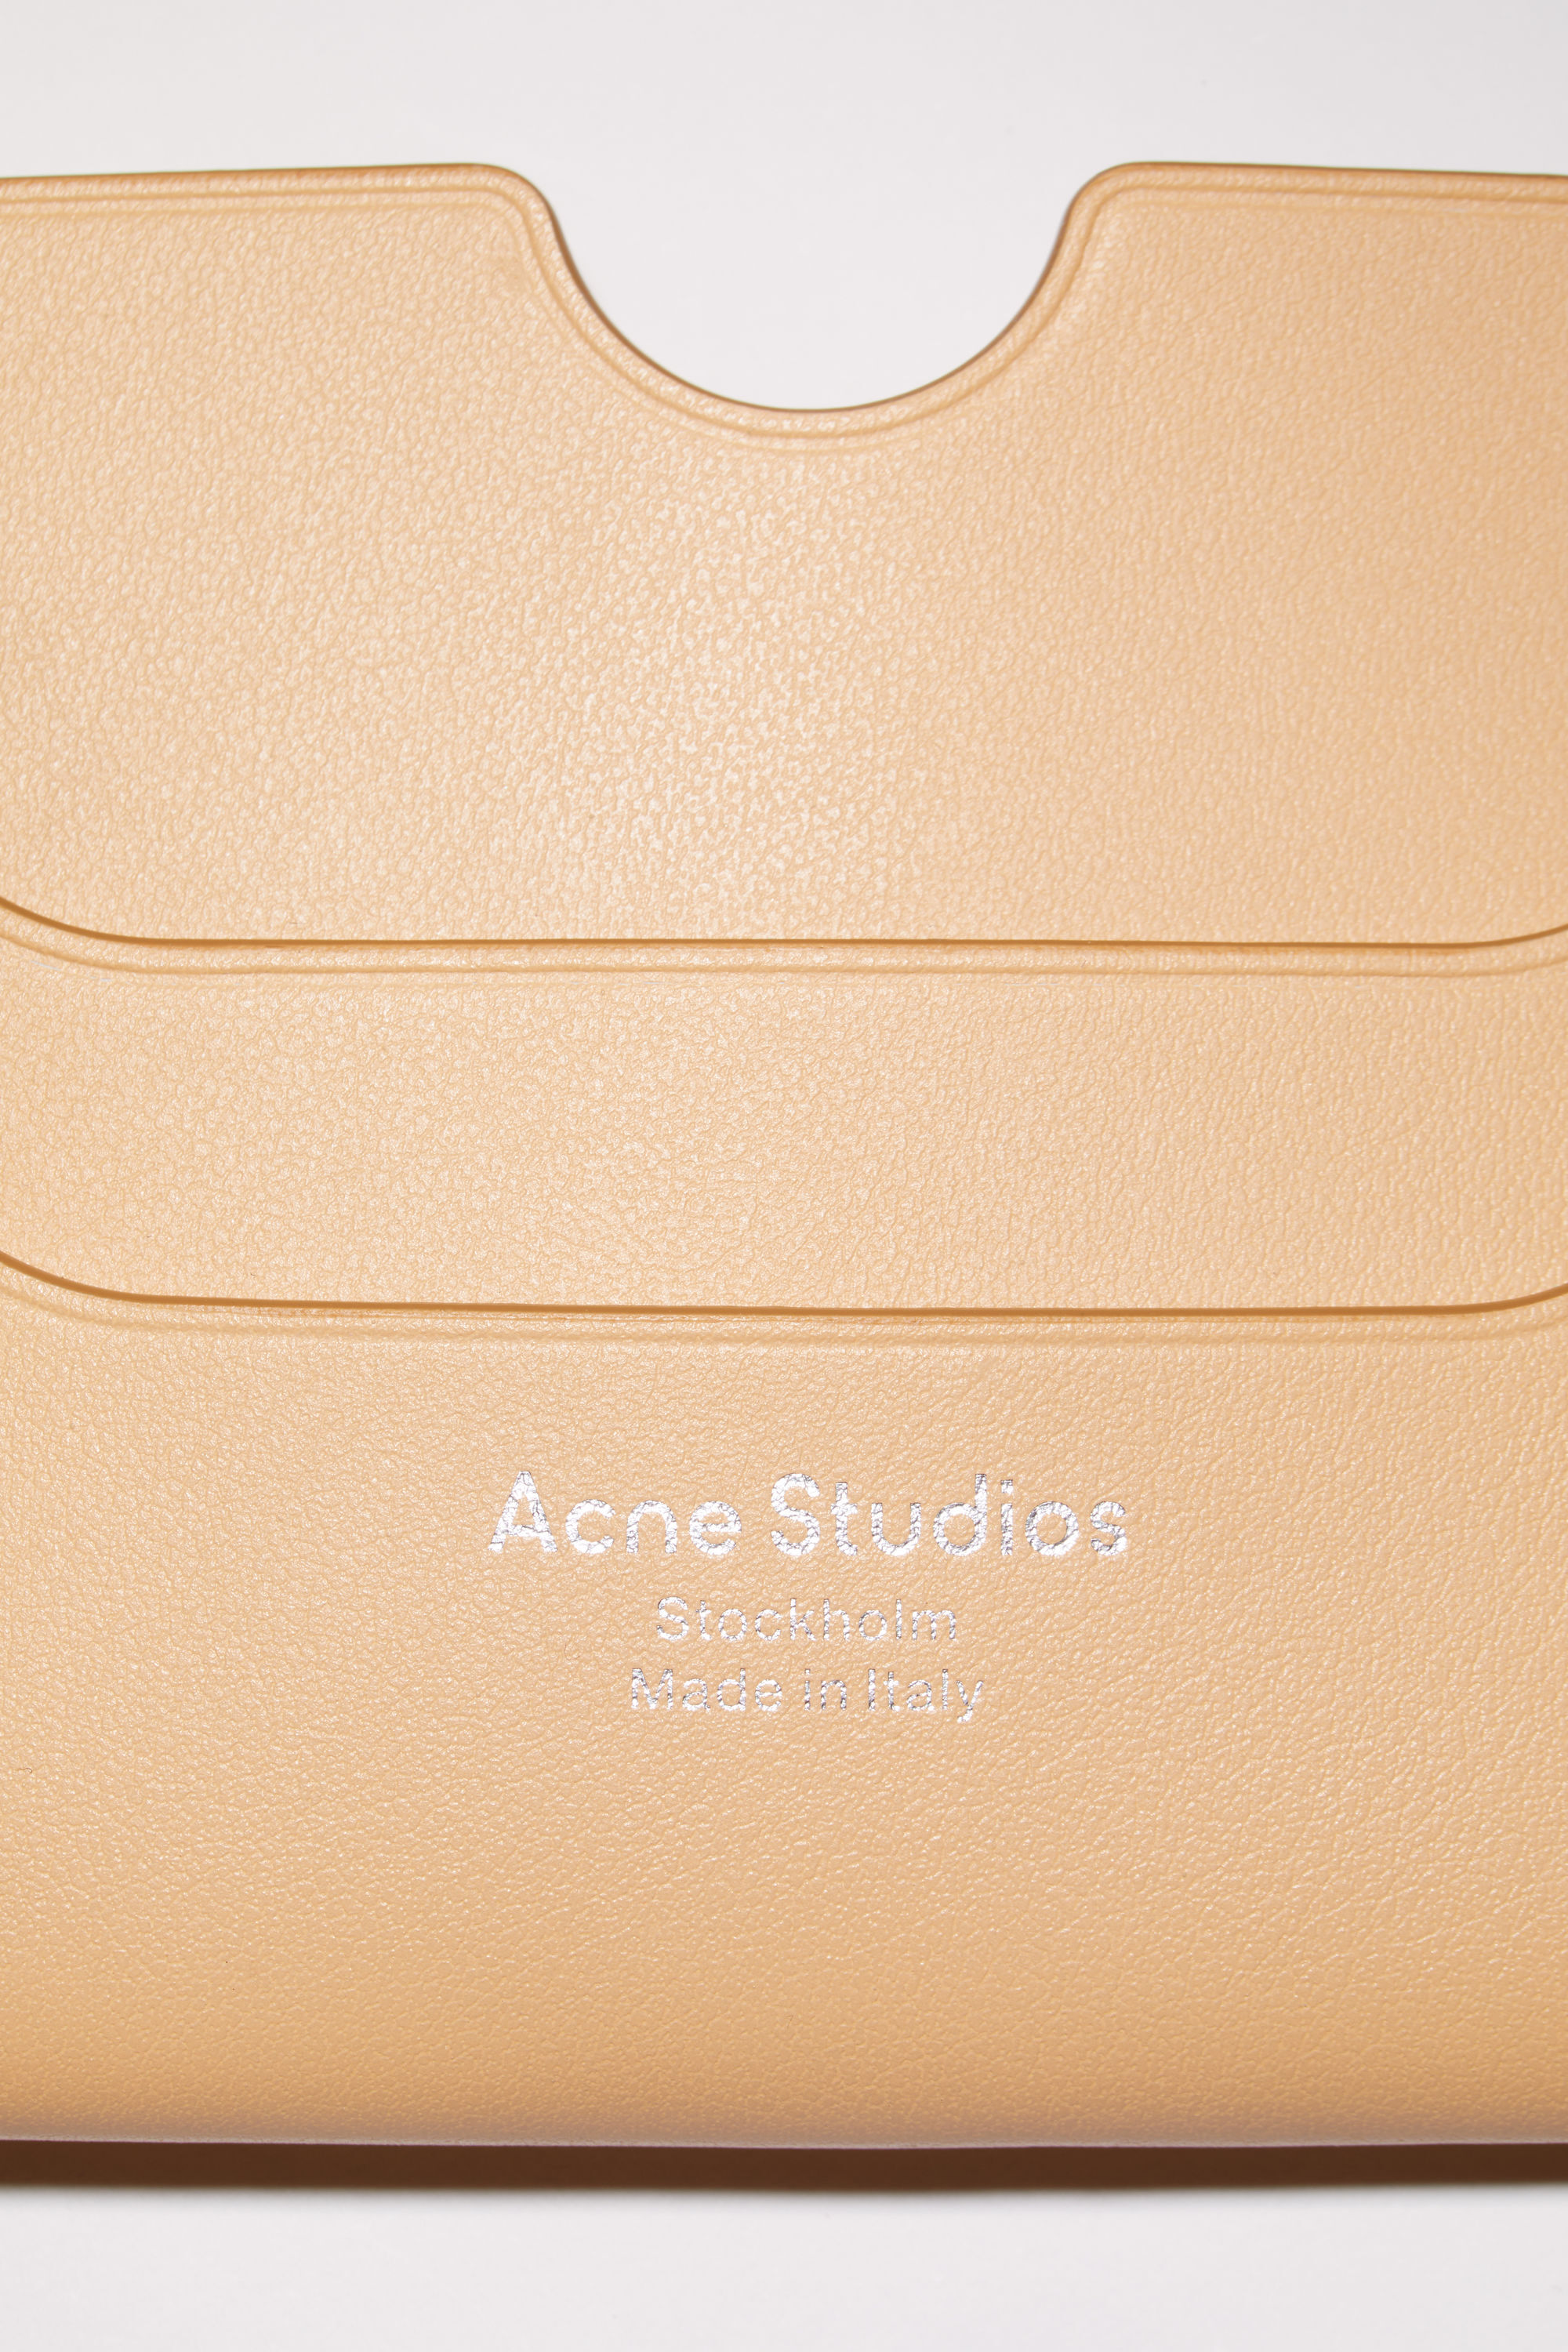 Acne Studios カードホルダー